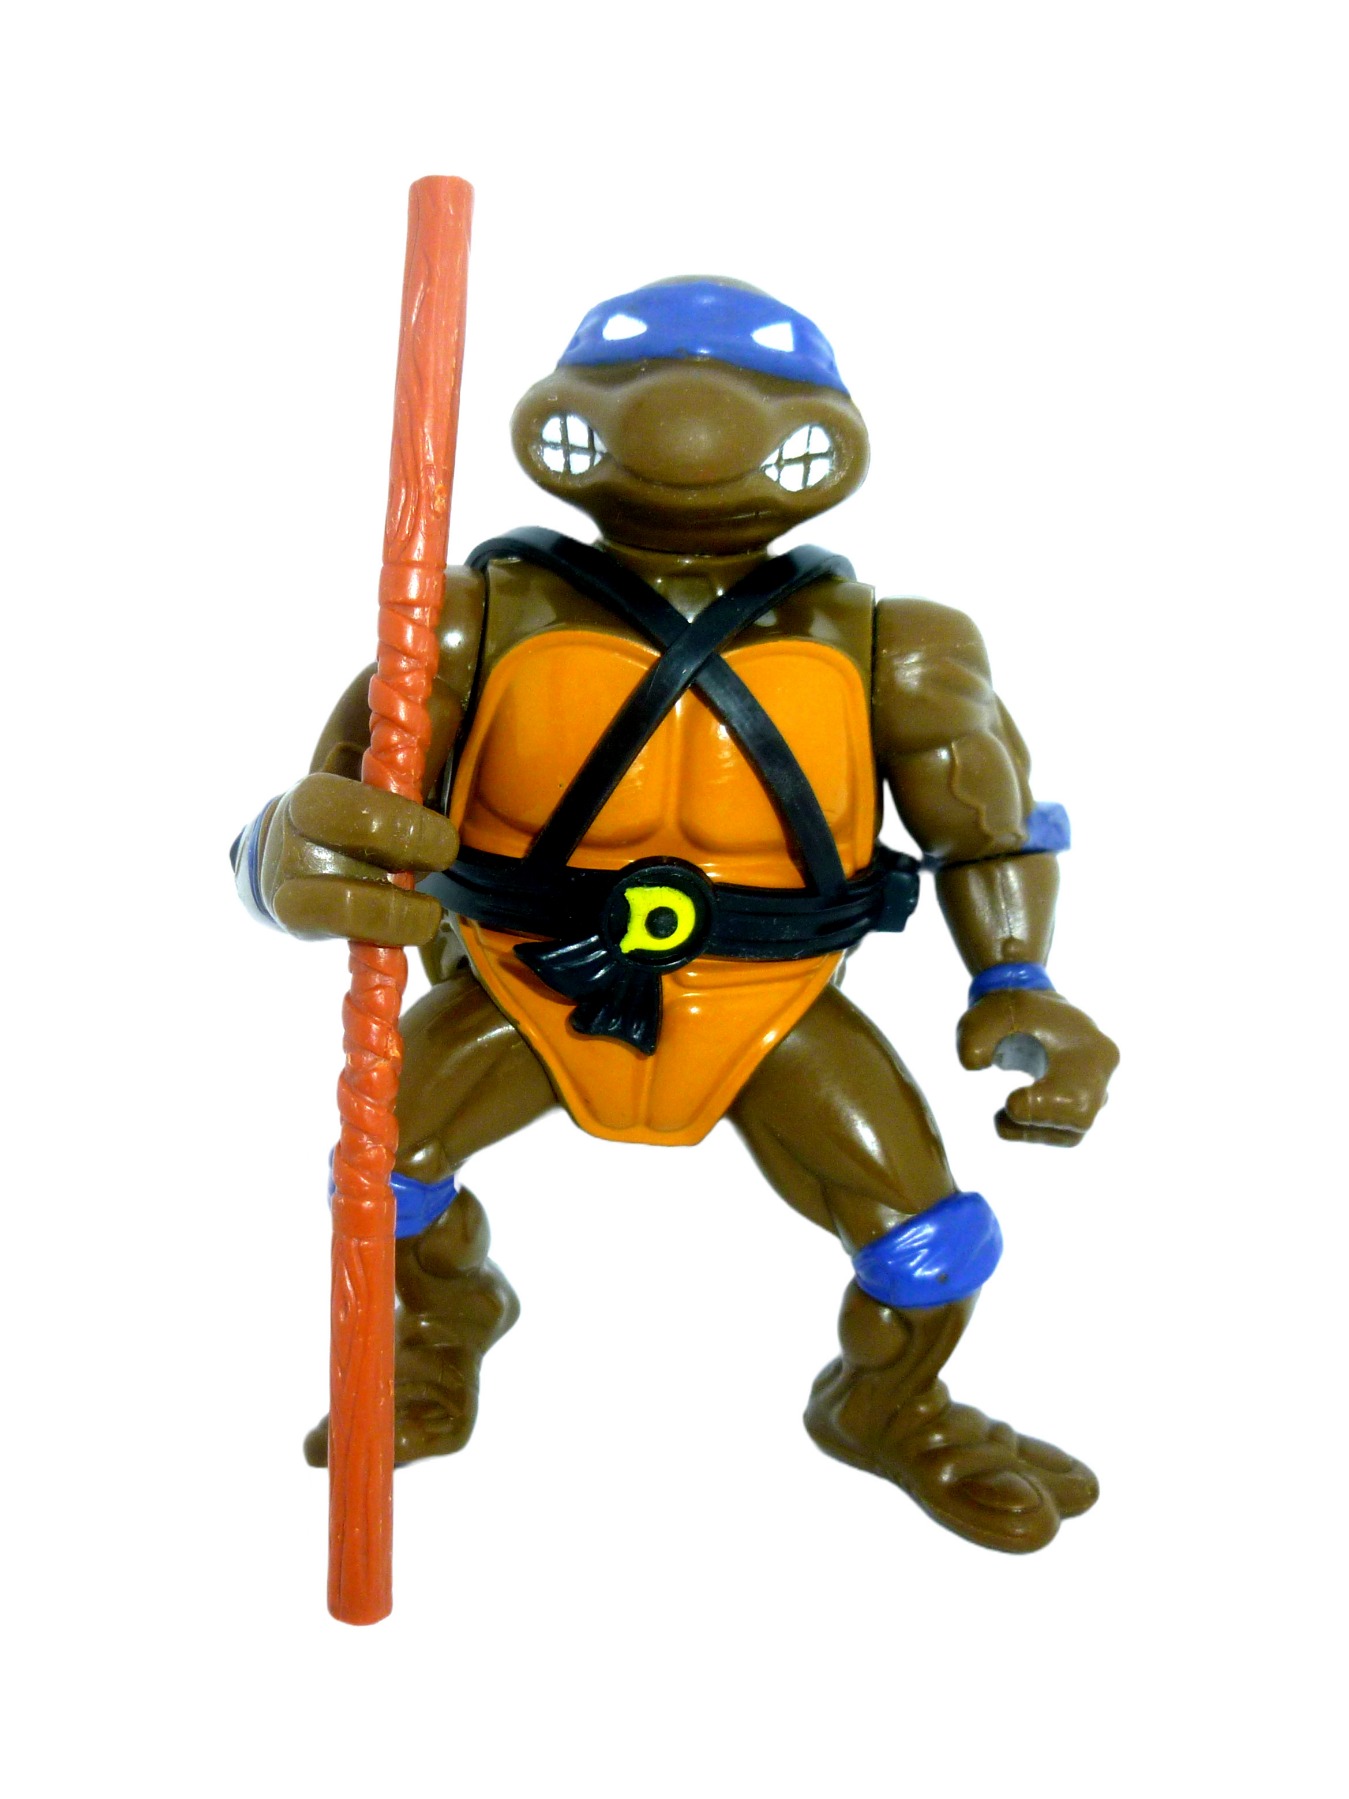 Donatello 1988 Mirage Studios / Playmates Toys 2